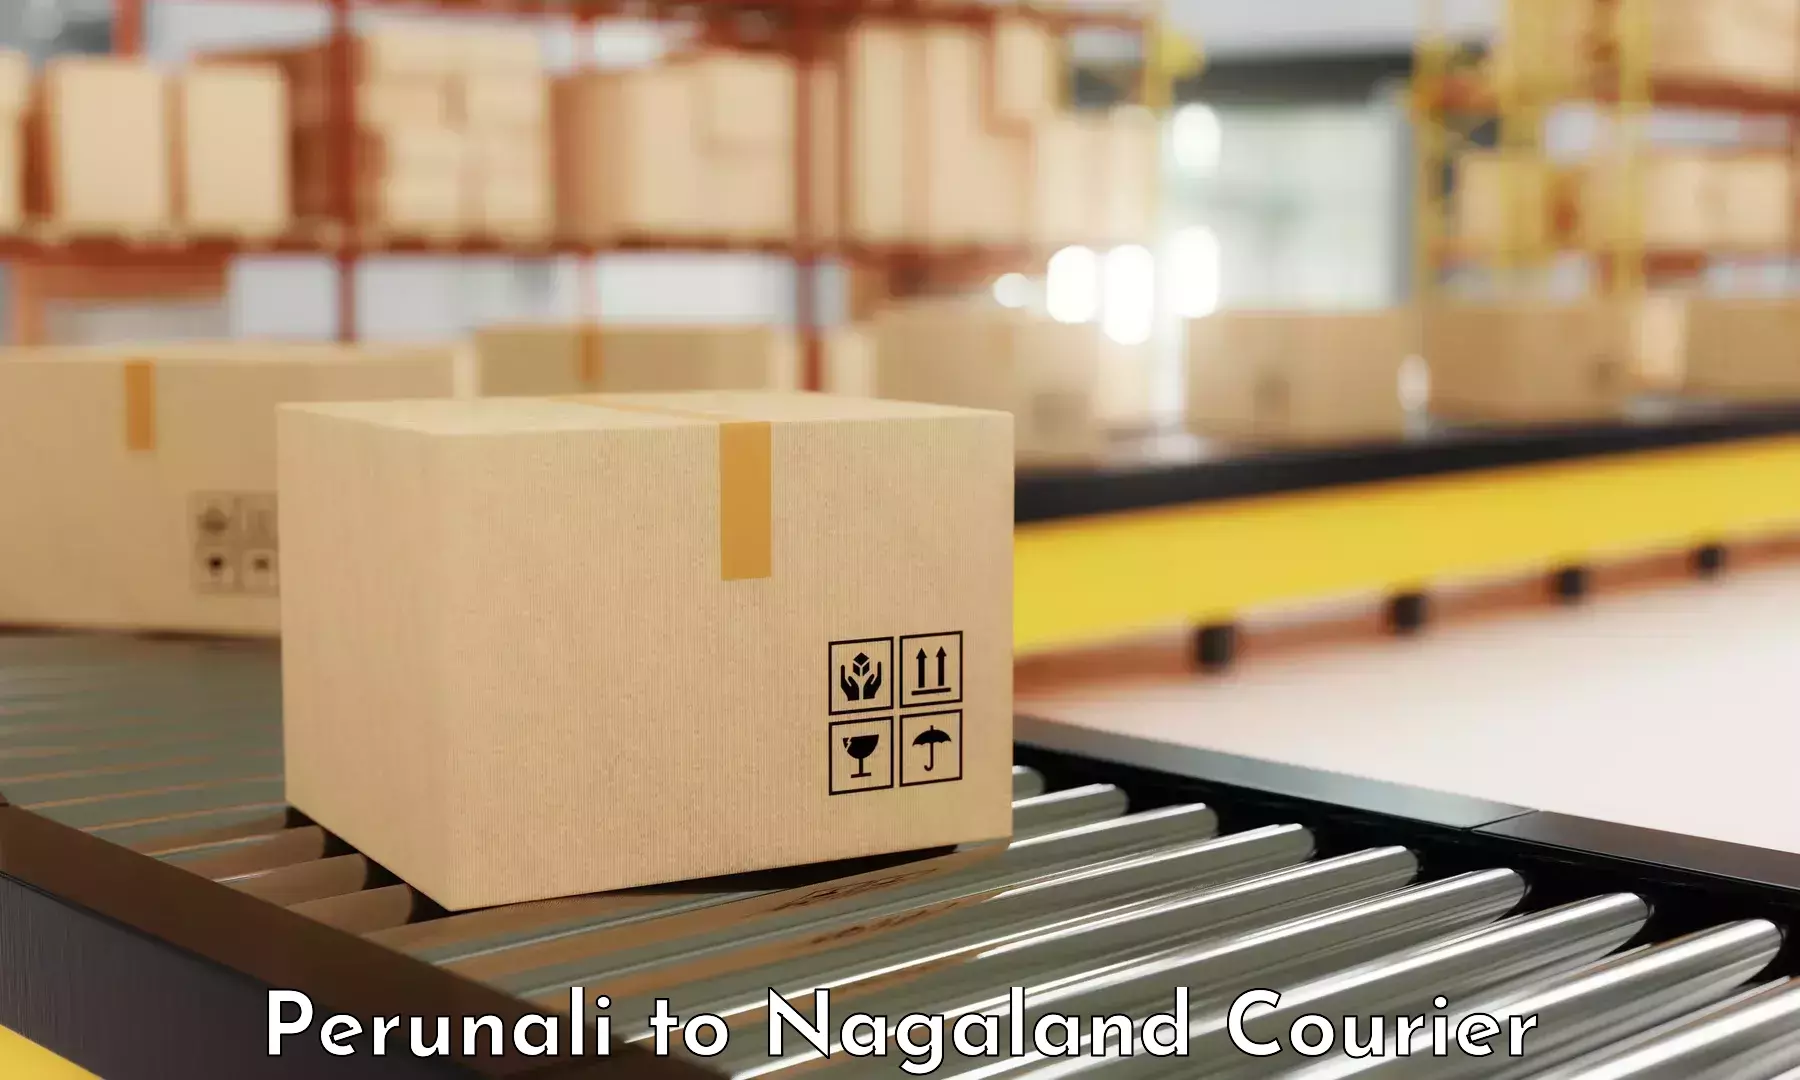 Shipping and handling Perunali to NIT Nagaland